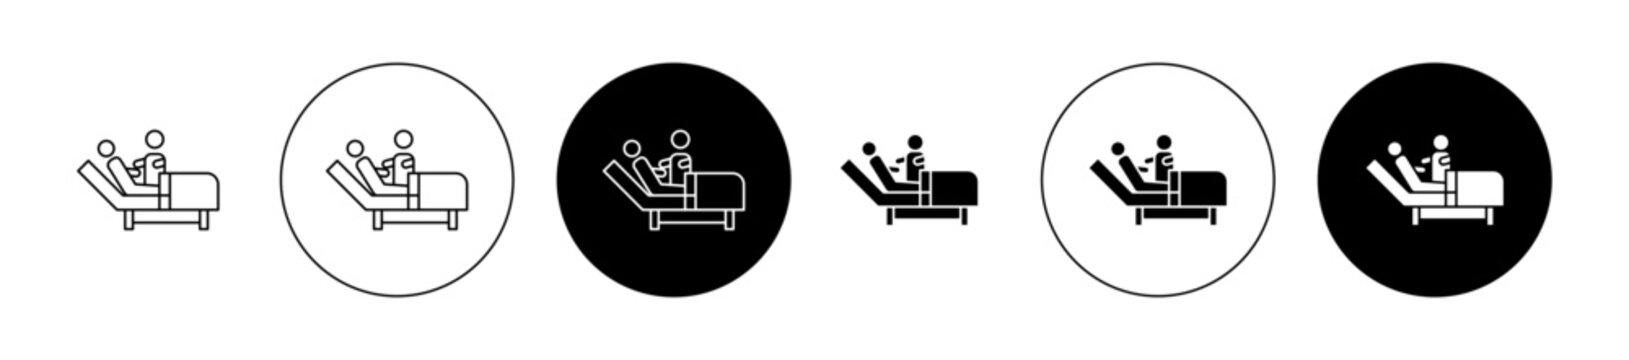 Caregiver nursing home Vector Icon Set. Elderly bed symbol for UI designs.